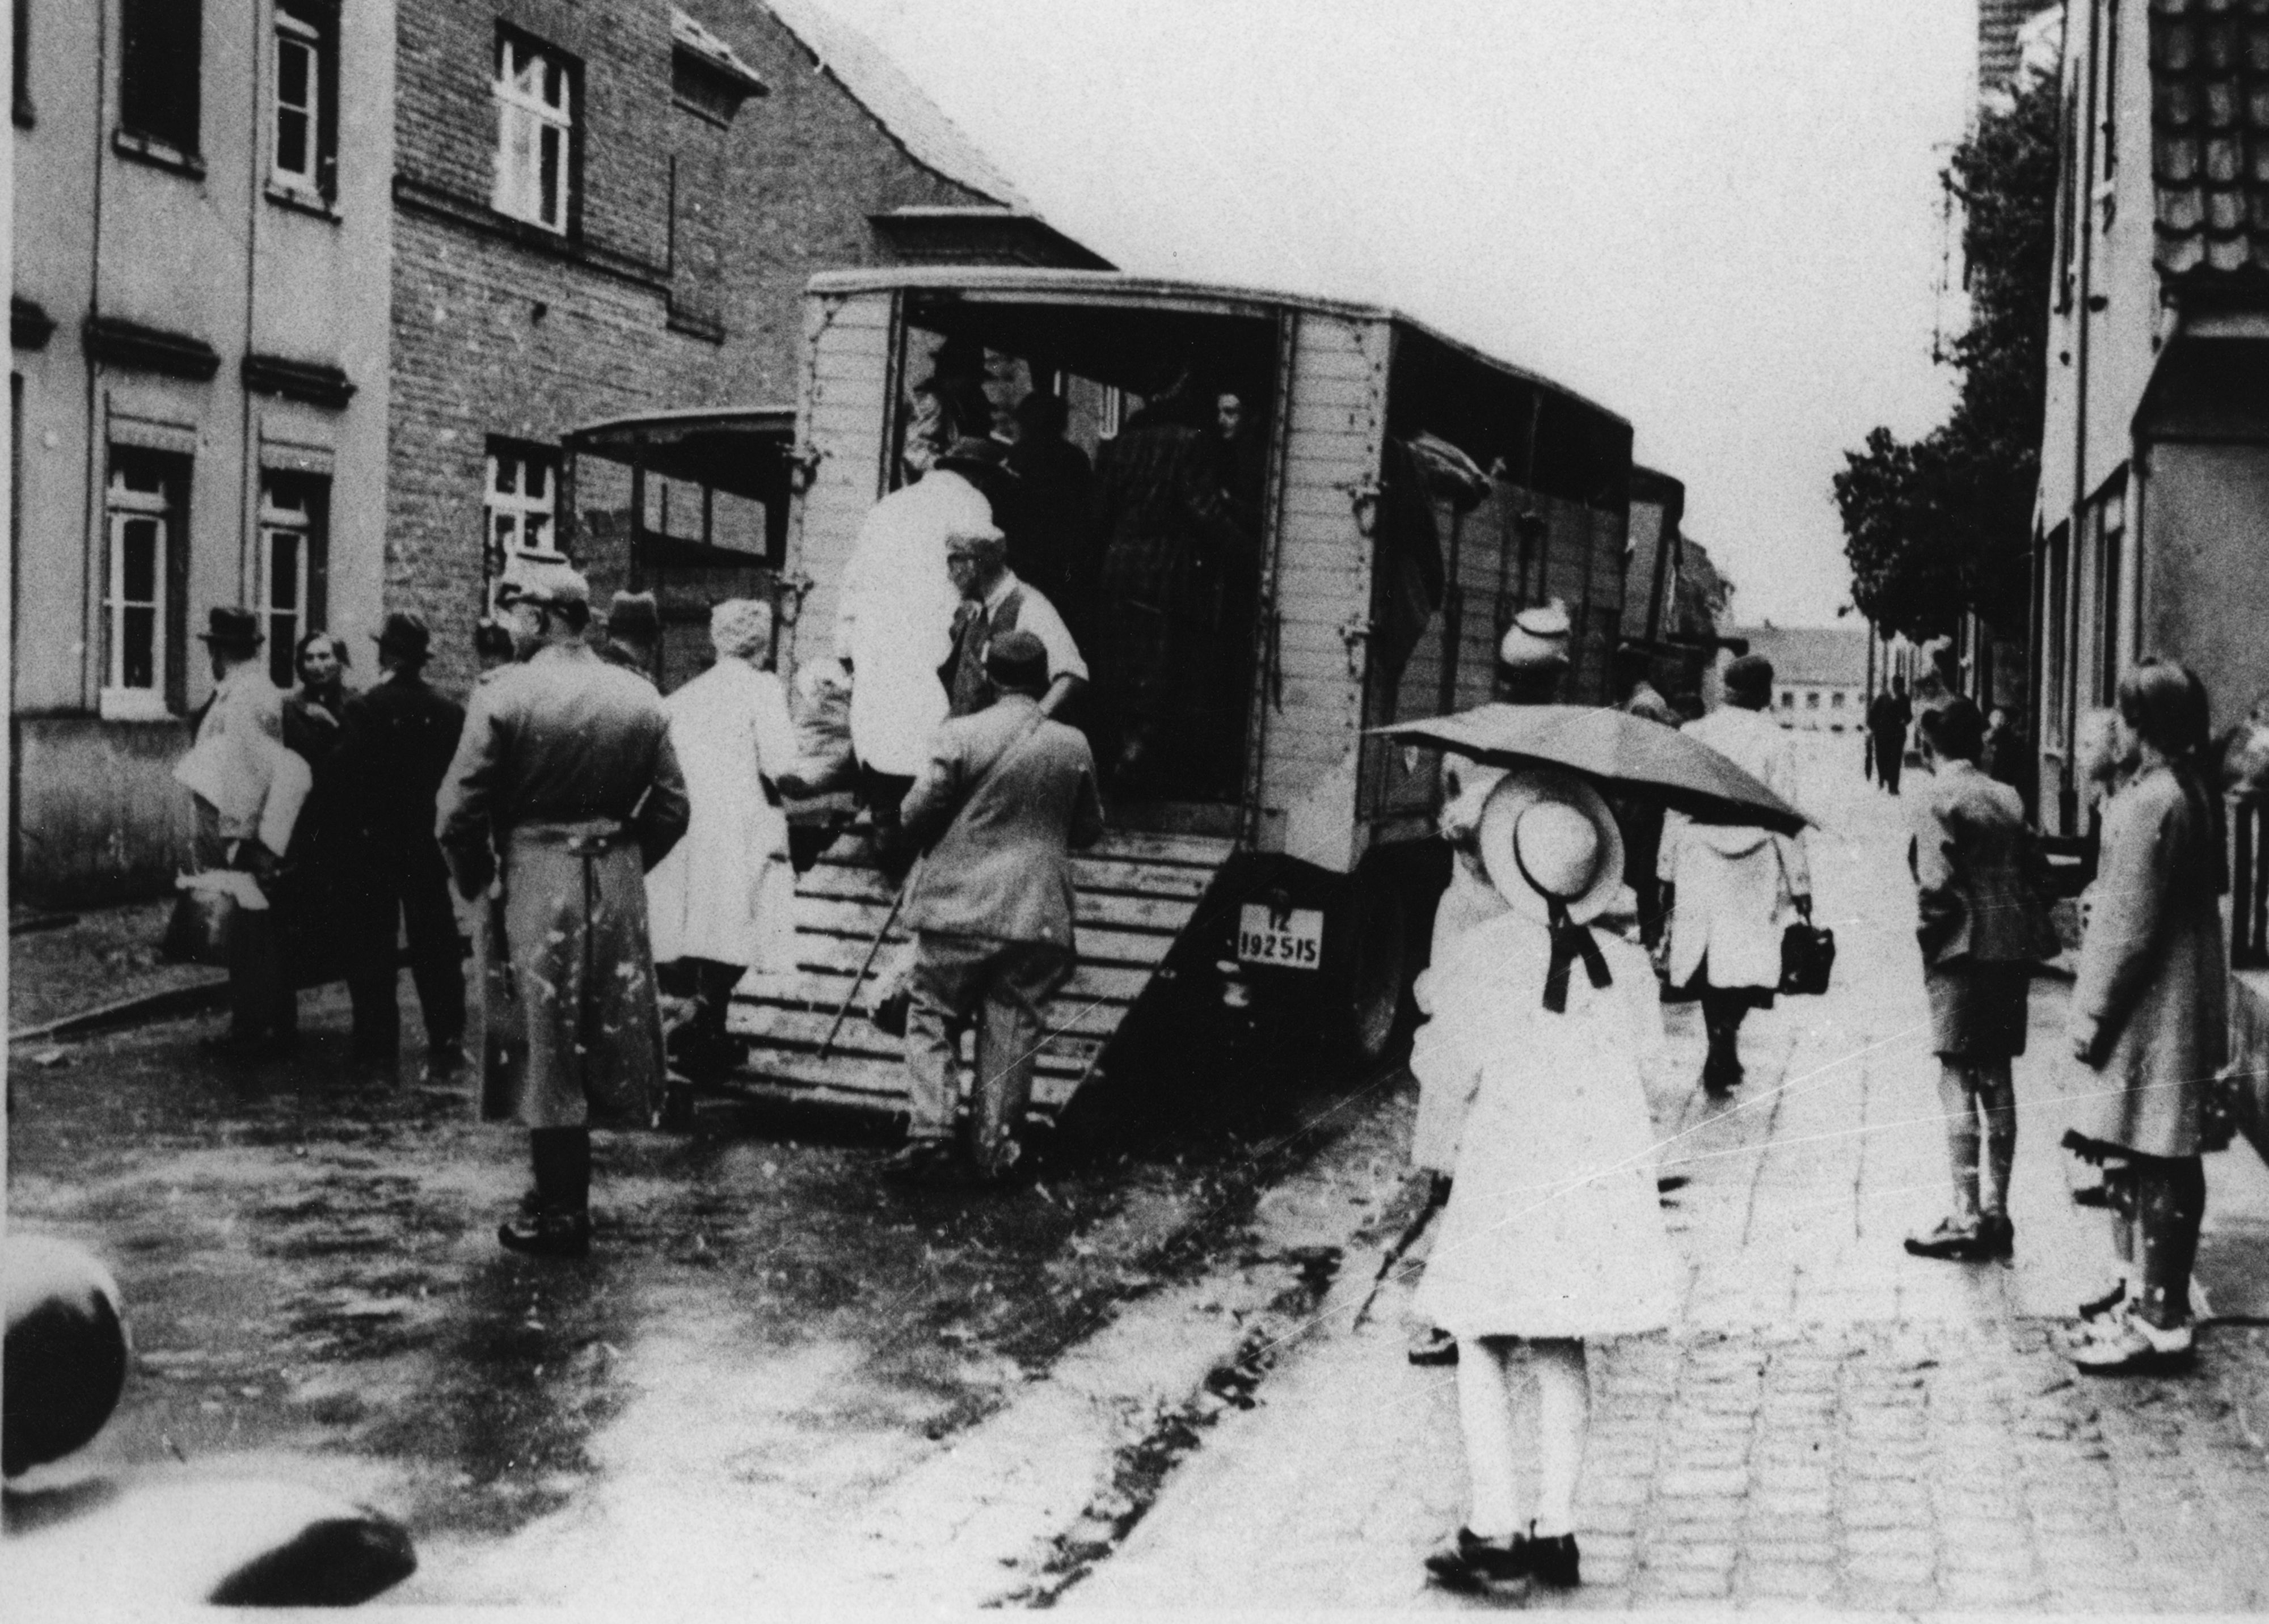 Przechodnie widzą Żydów wprowadzanych przez policję do ciężarówki w celu deportacji. Kerpen, Nadrenia Północna-Westfalia, 1942. Fot. Stadtarchiv Kerpen